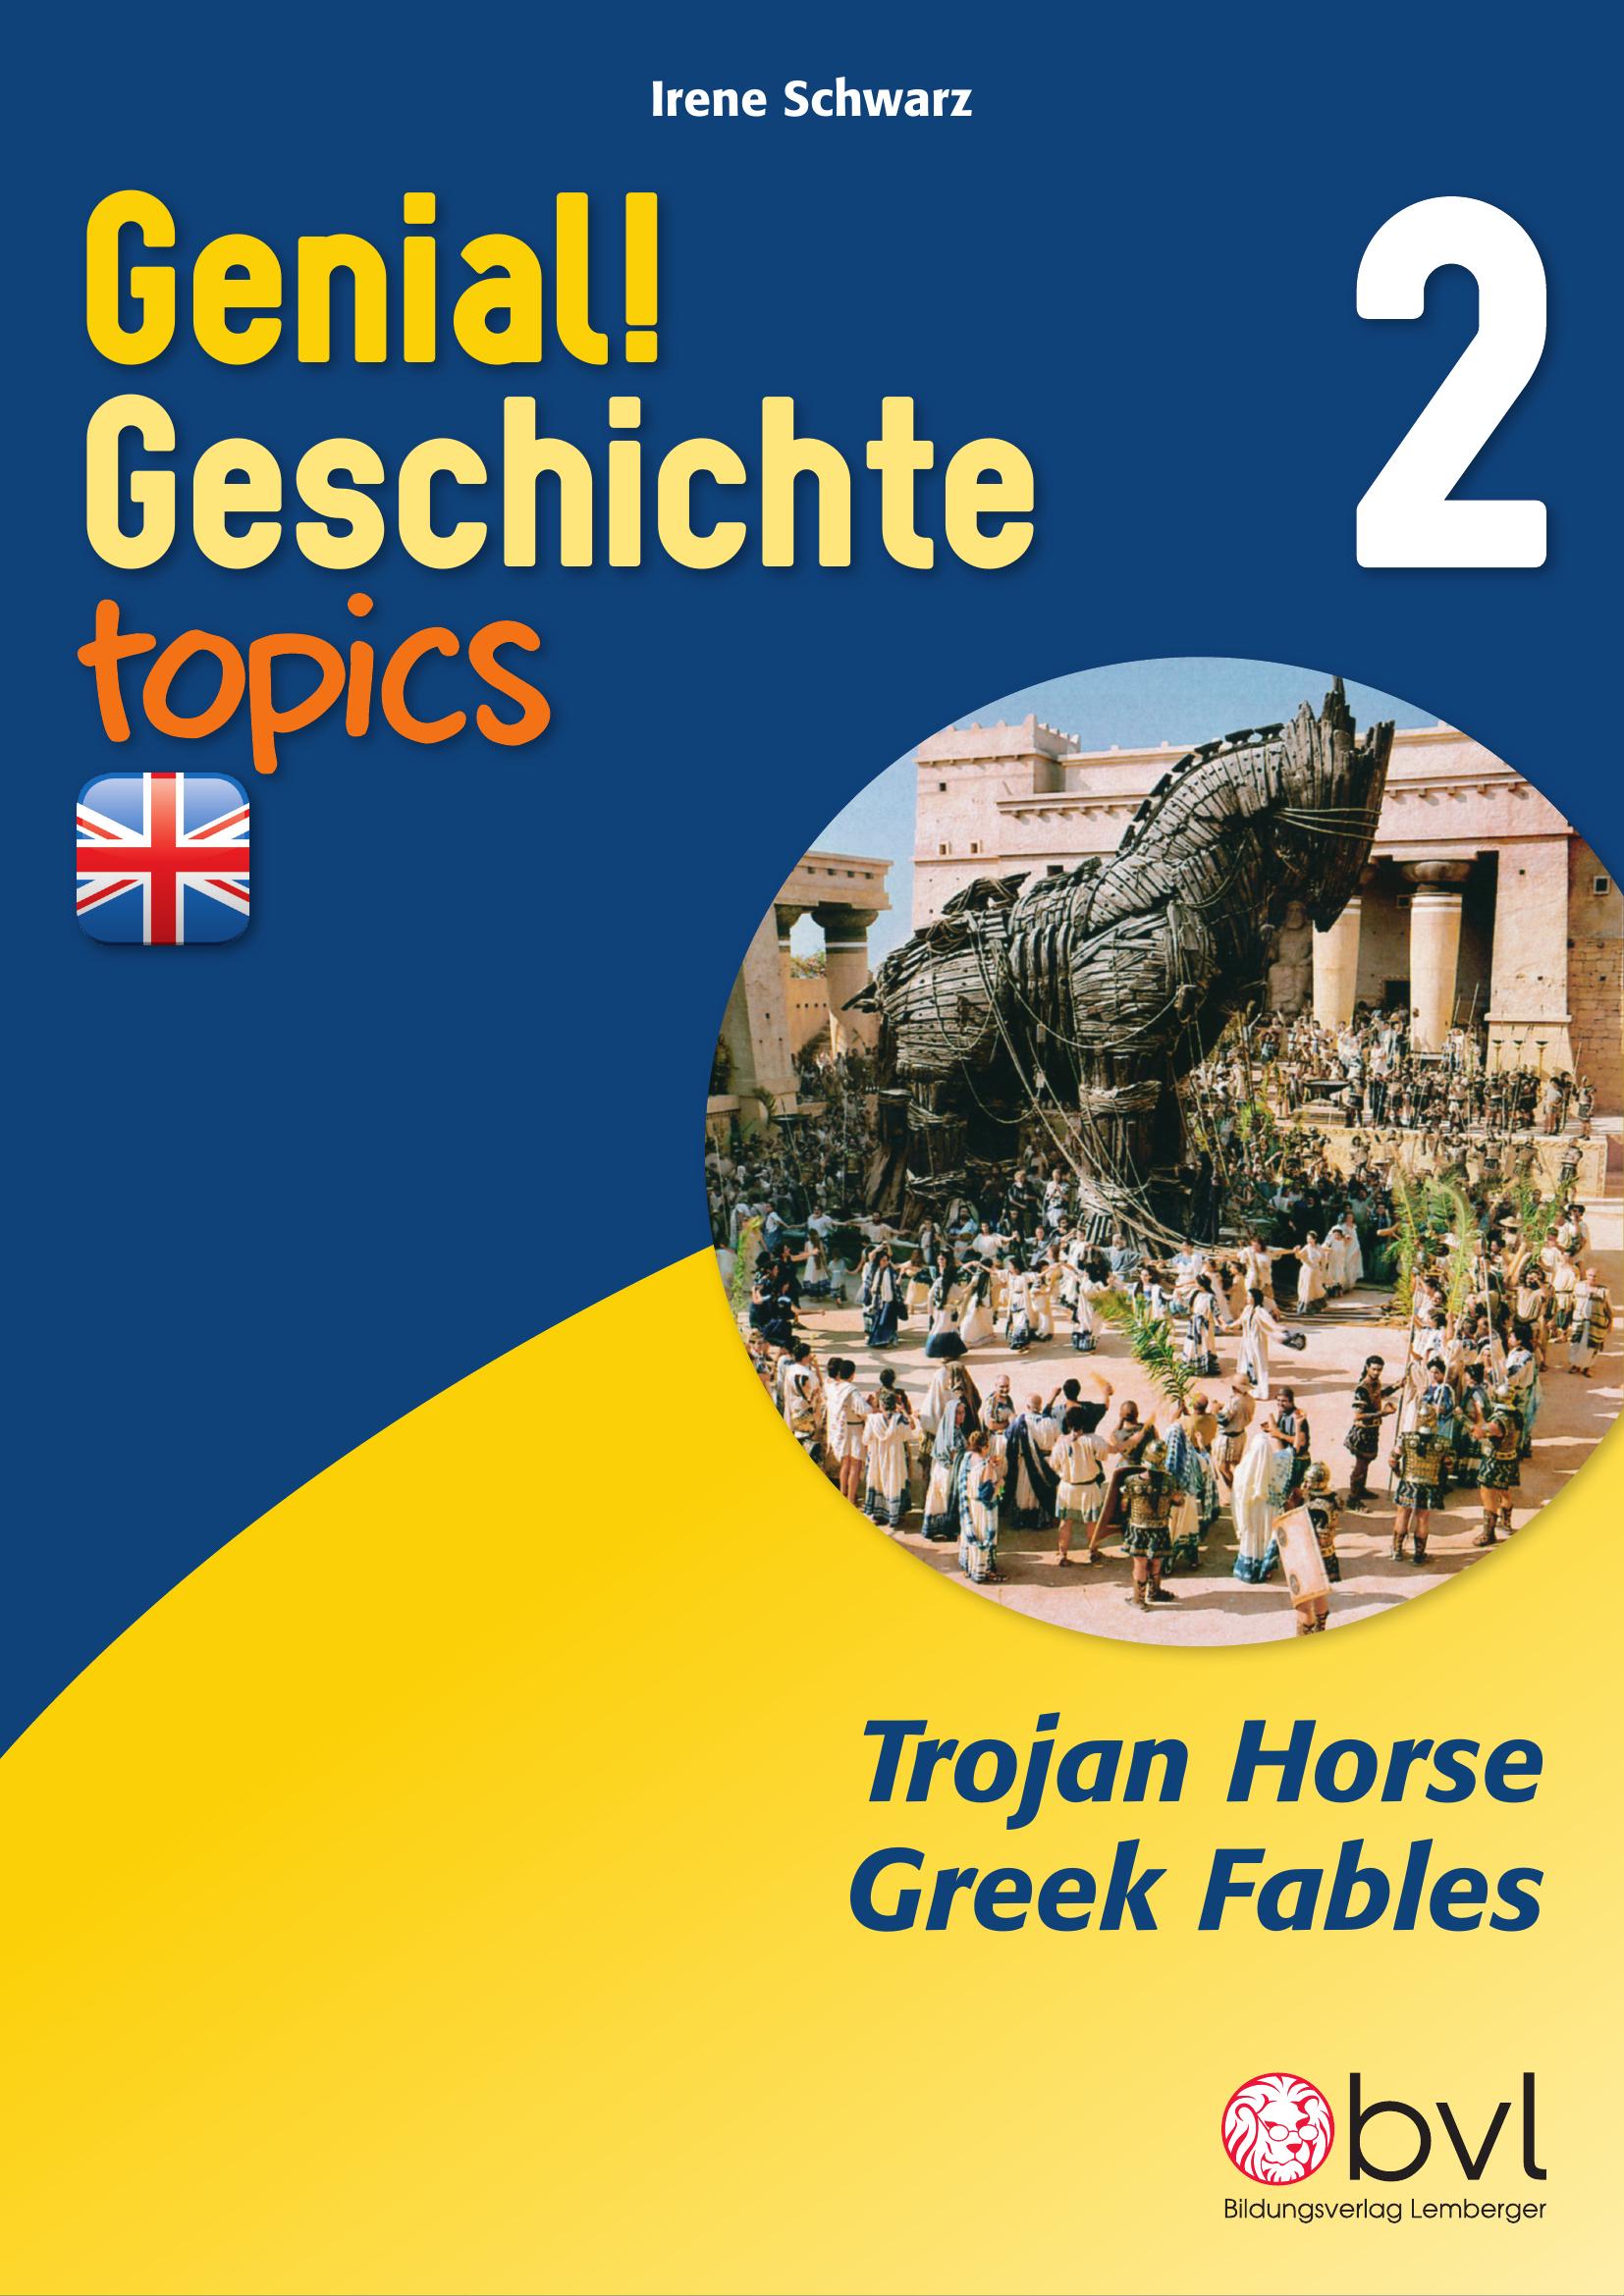 Genial! Geschichte 2 – topics 3: Trojan Horse – Greek Fables